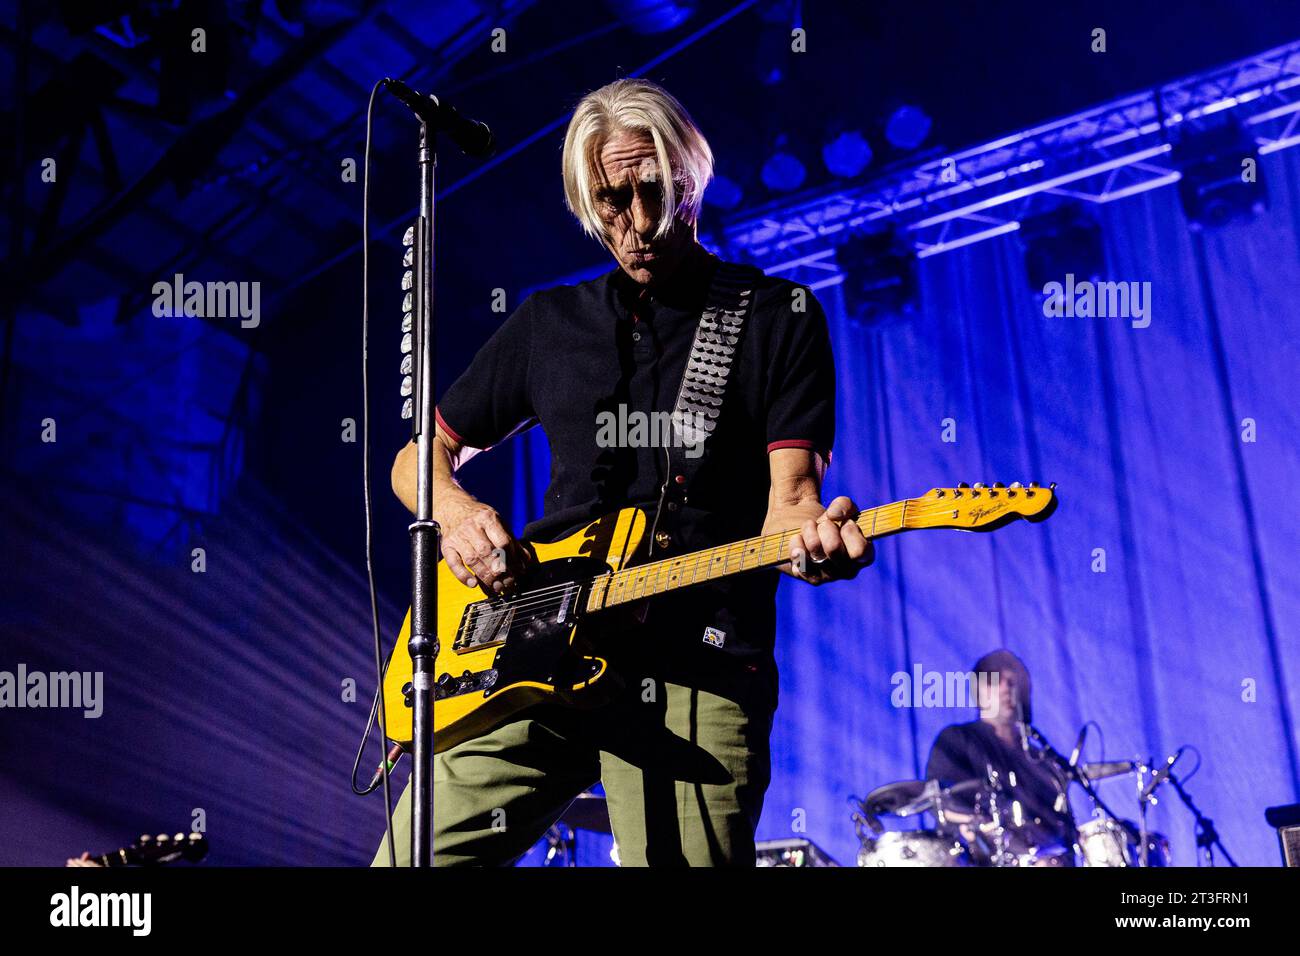 Paul Weller in concert Stock Photo - Alamy